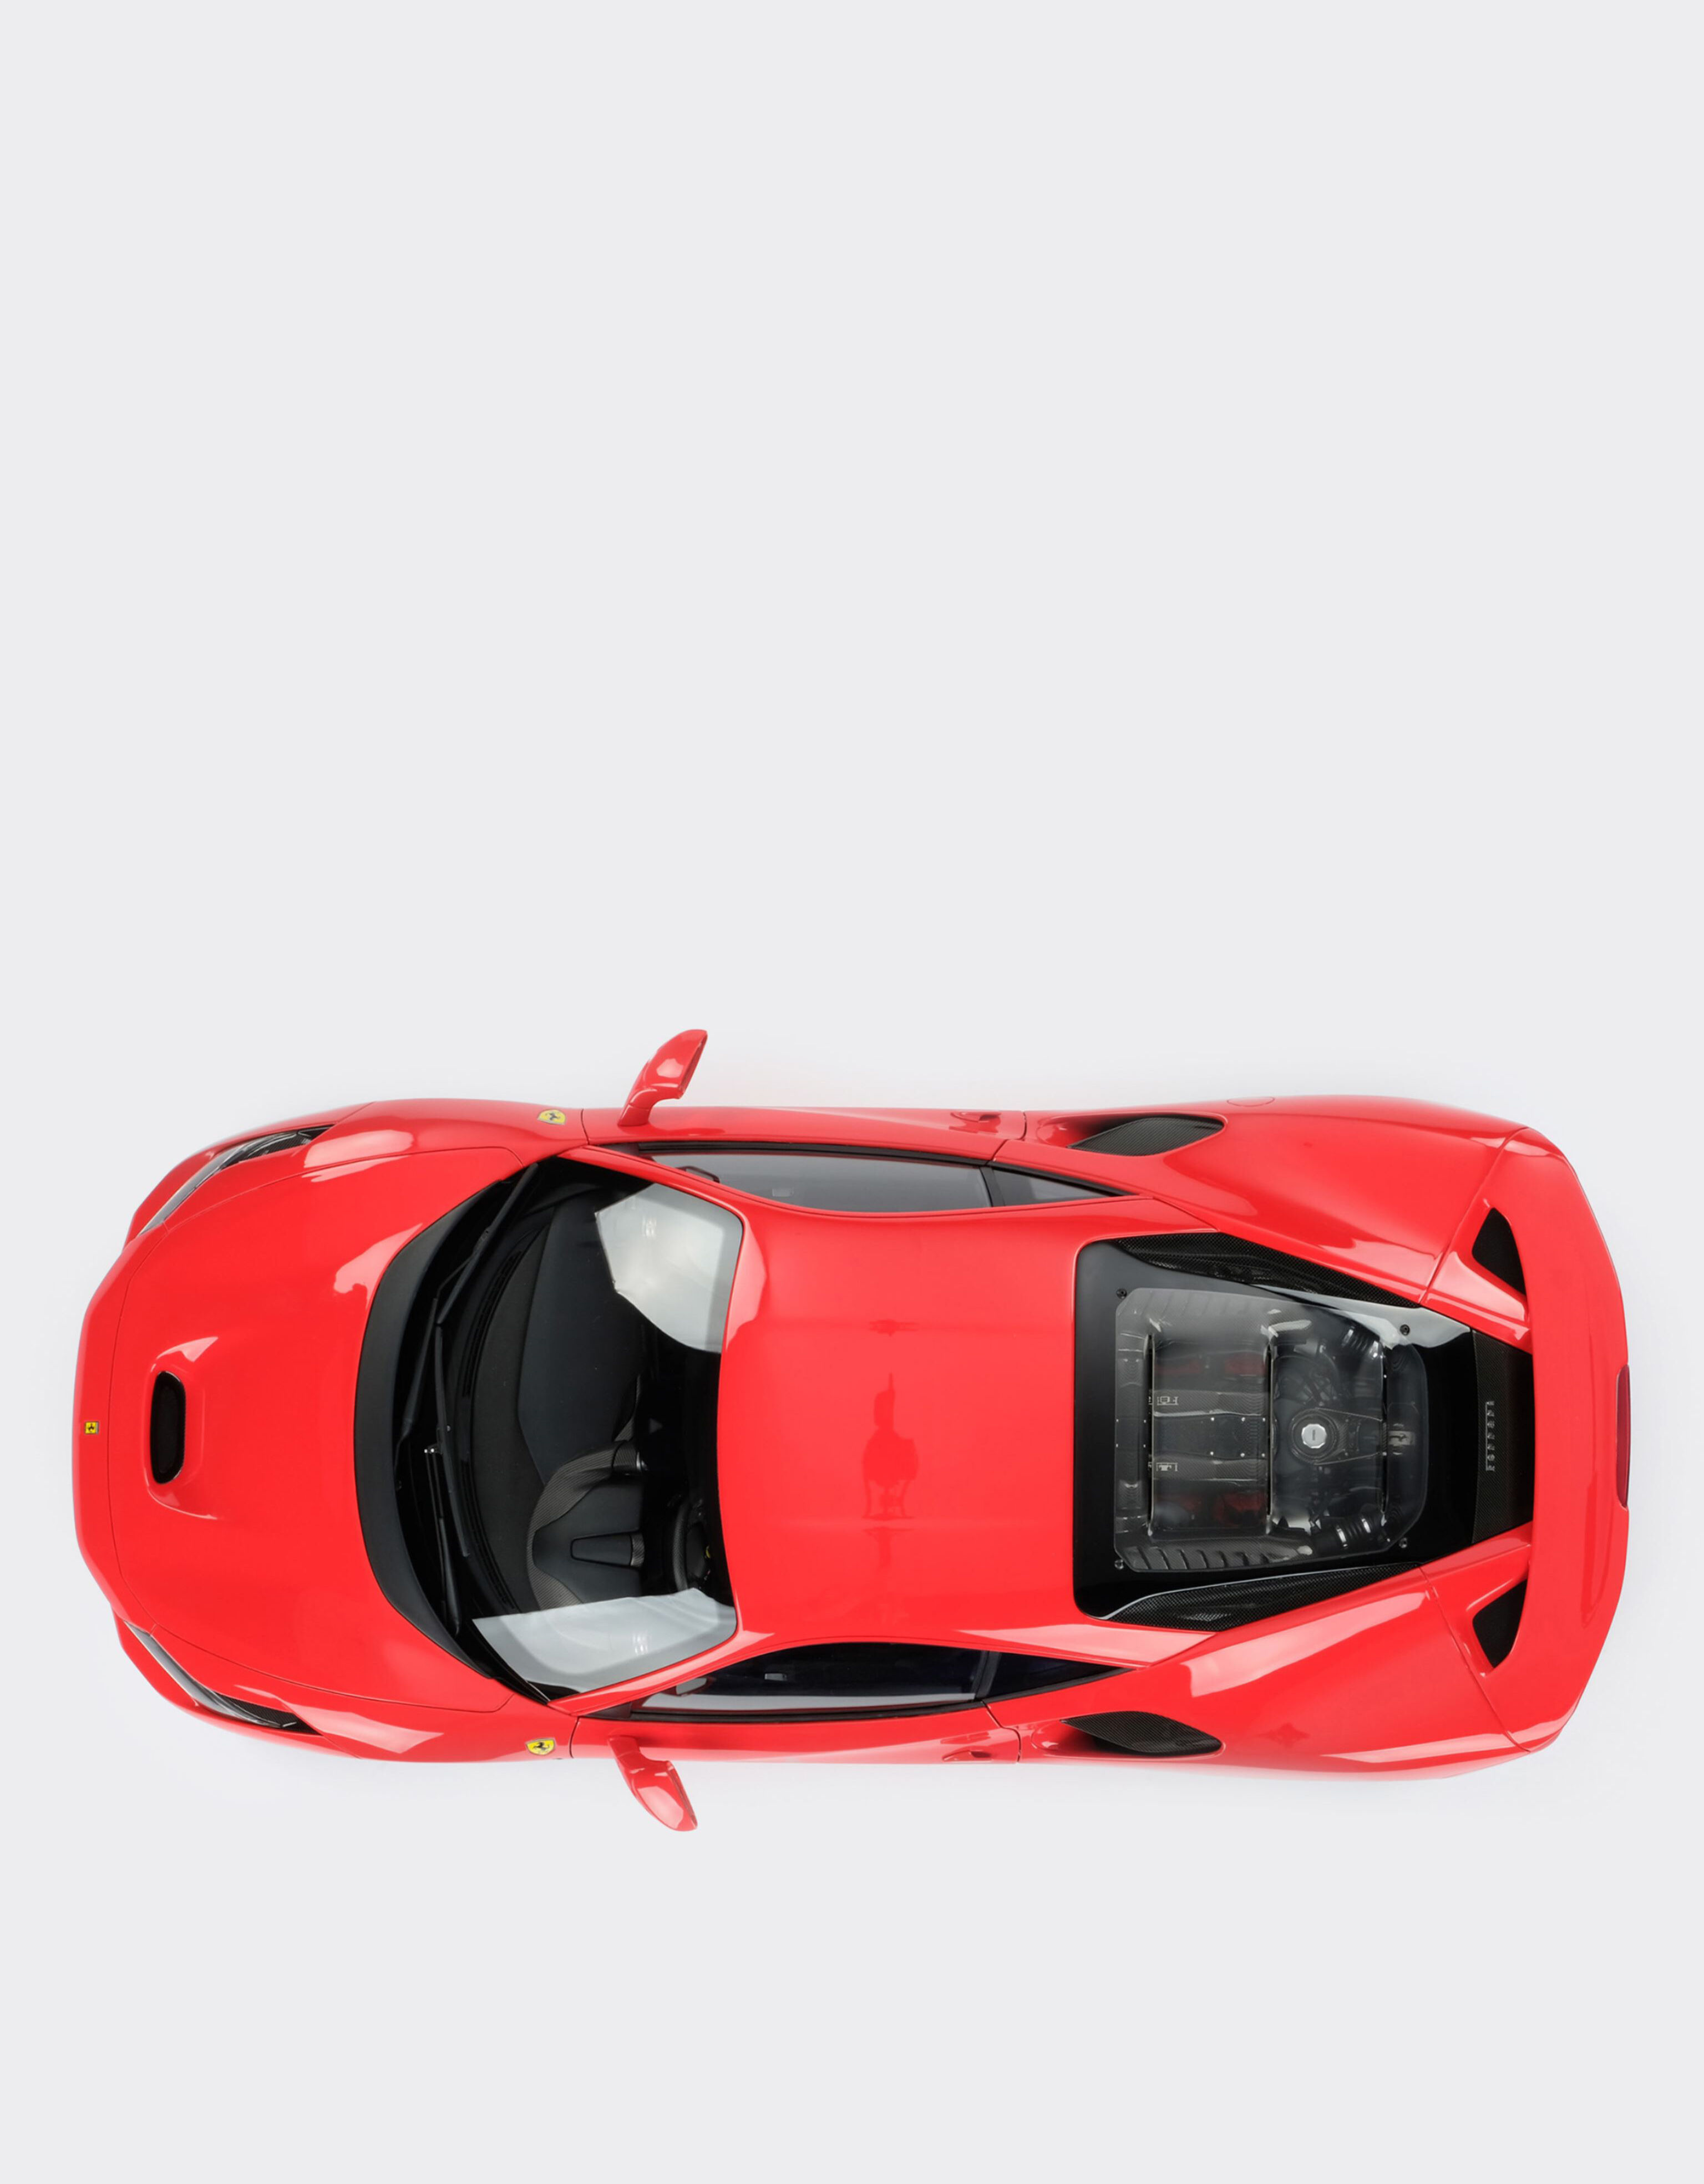 Ferrari Modellino Ferrari F8 Tributo in scala 1:8 Rosso F0078f